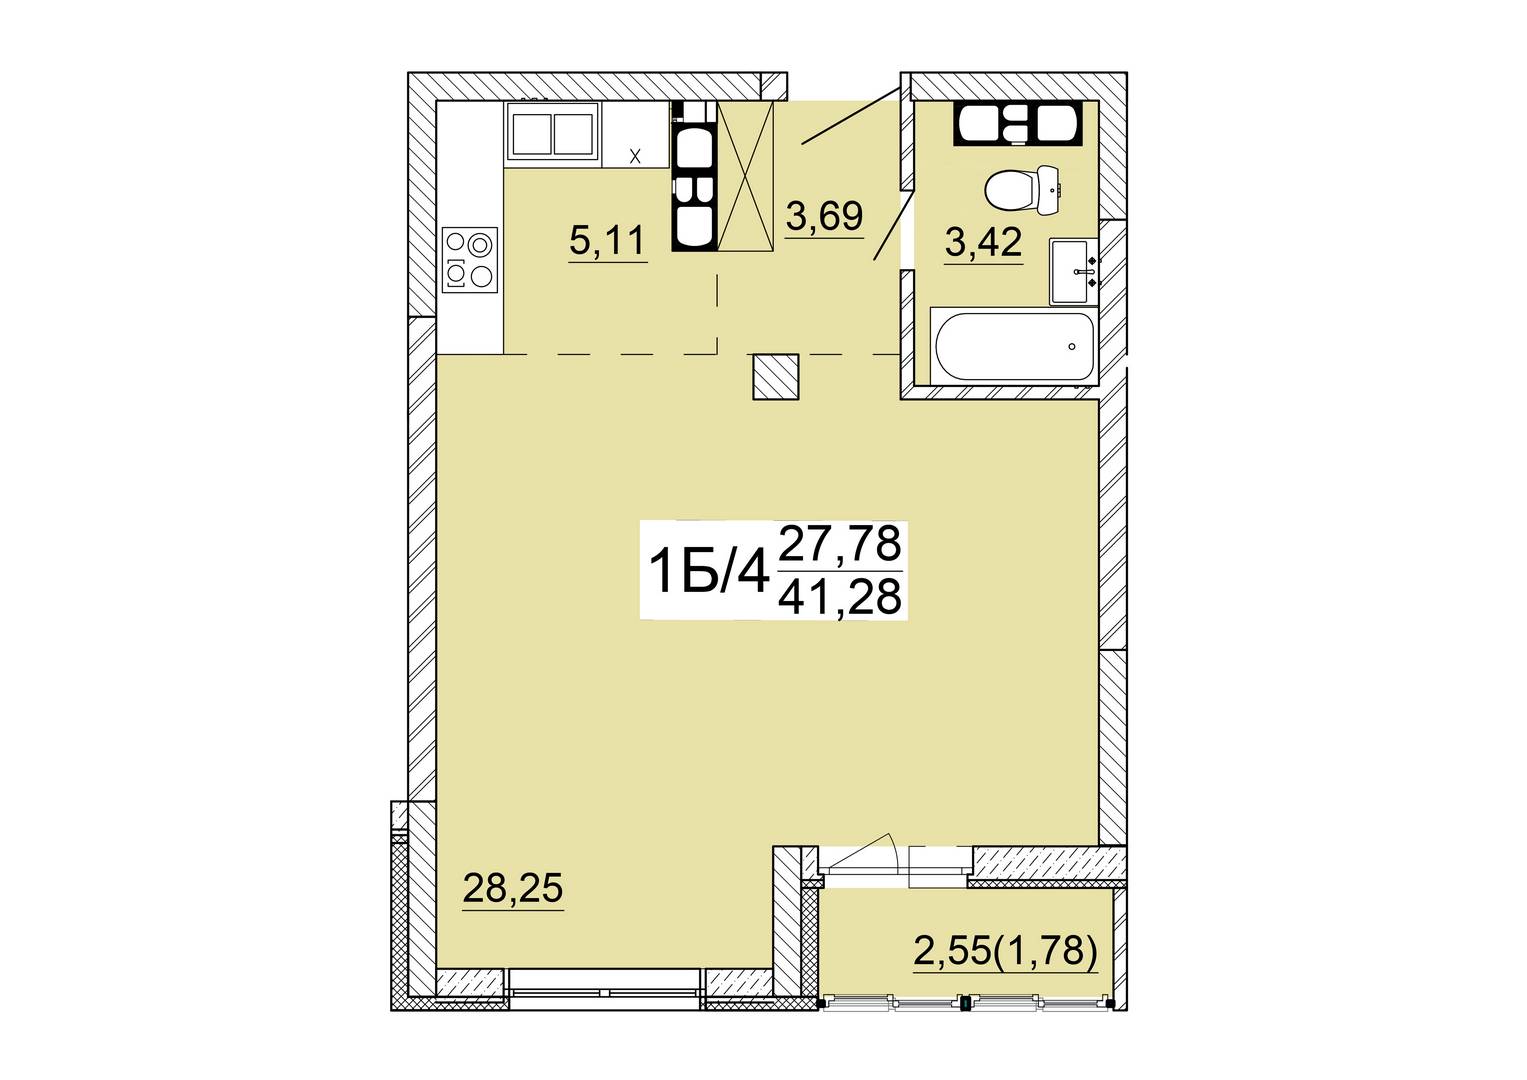 Айрон 1 - комнатная квартира